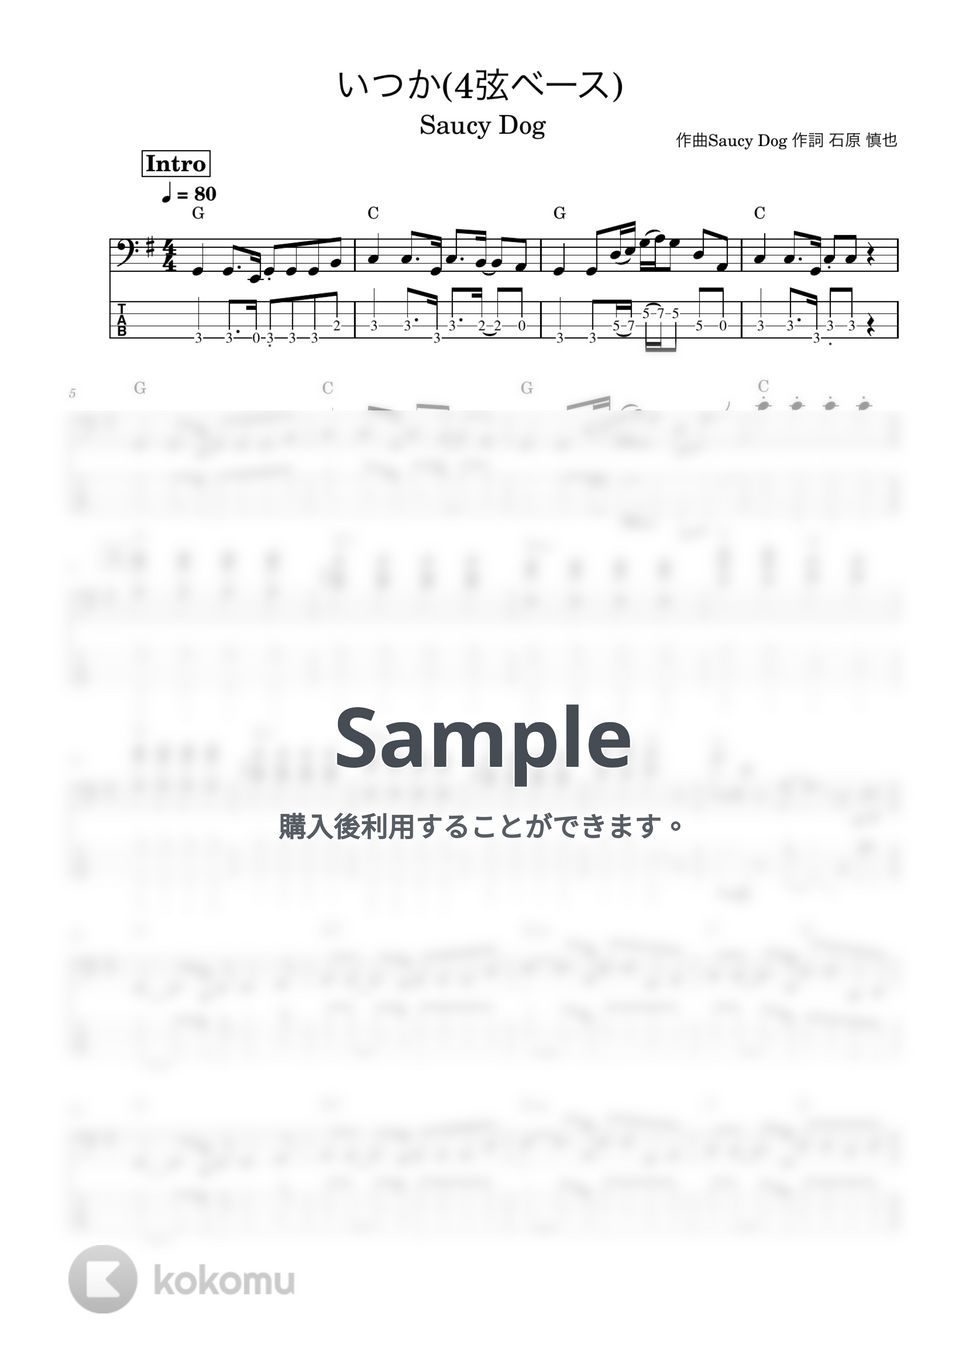 Saucy Dog - いつか (『AbemaPrime』エンディングテーマ、ベース譜) by Kodai Hojo